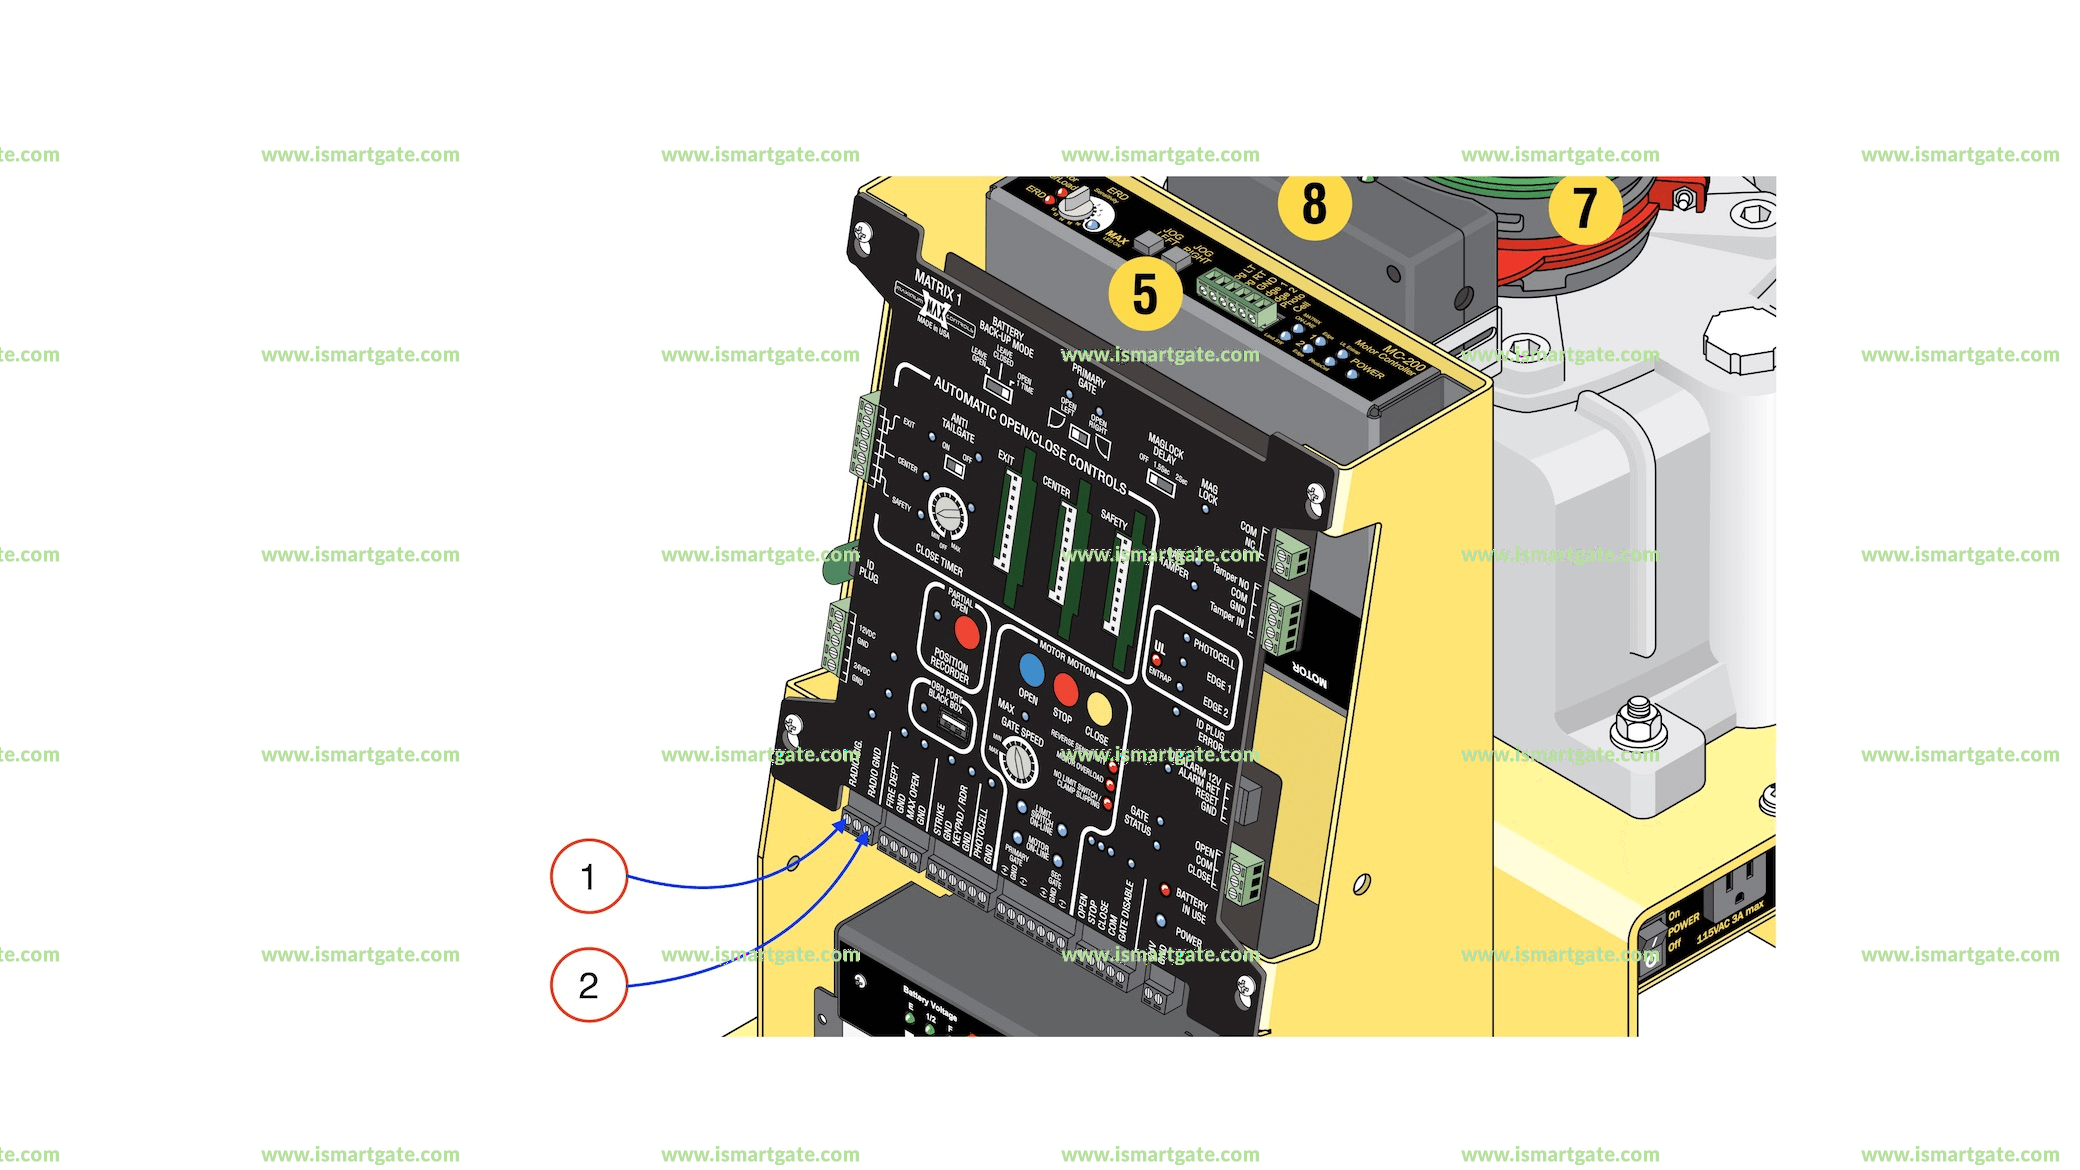 Wiring diagram for MAX - Maximum Controls- FAST